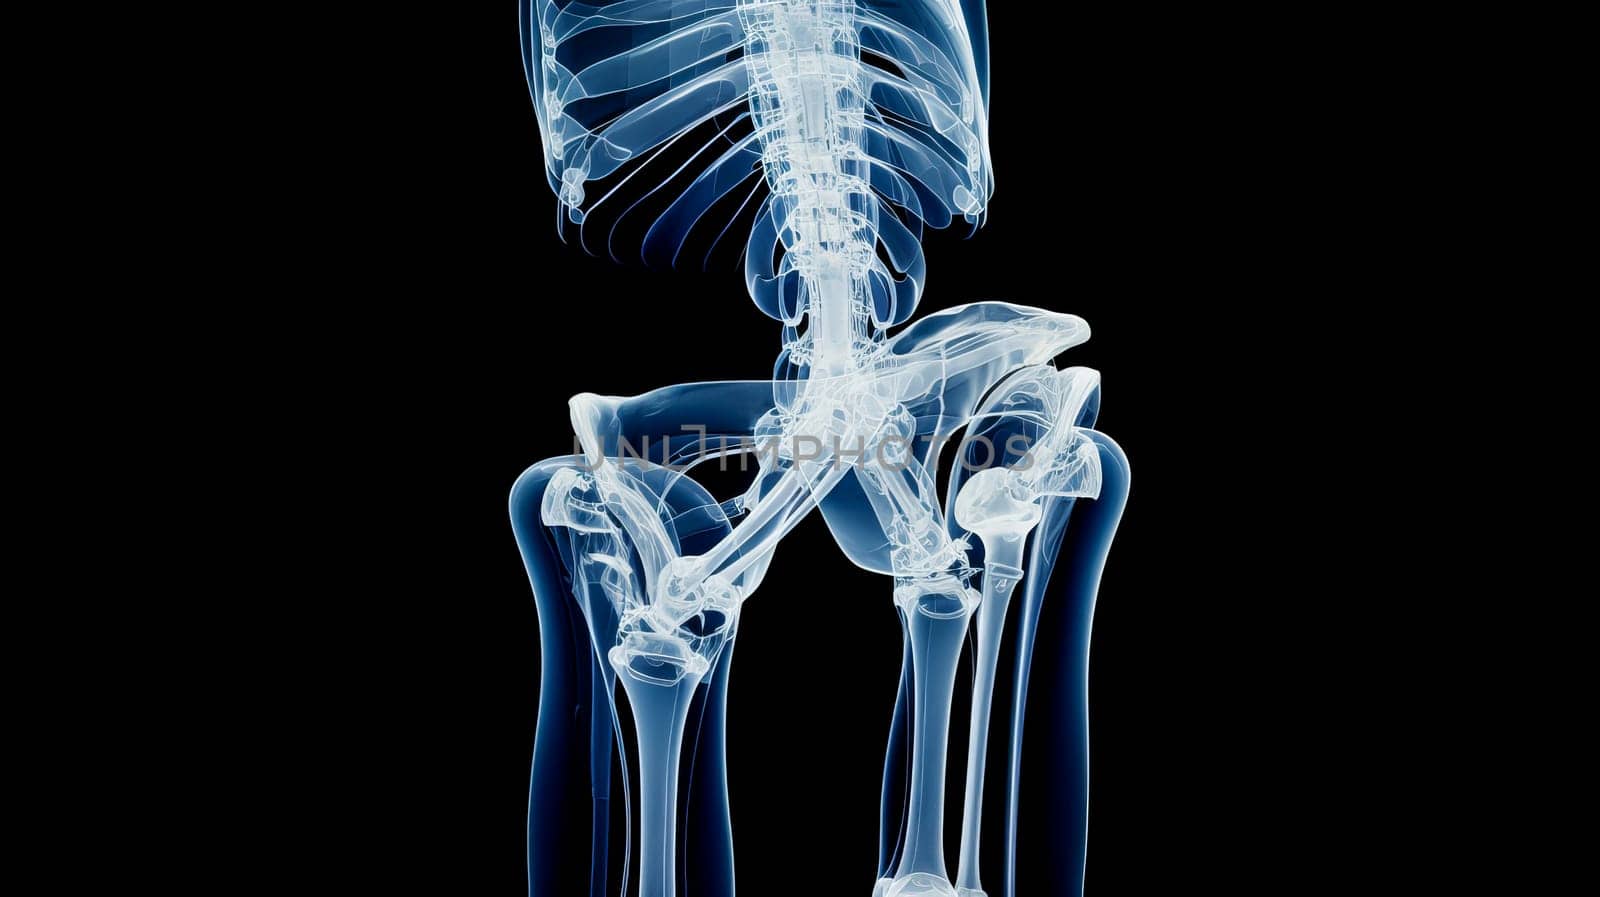 Human skeleton on X-ray, human bones. by Alla_Yurtayeva